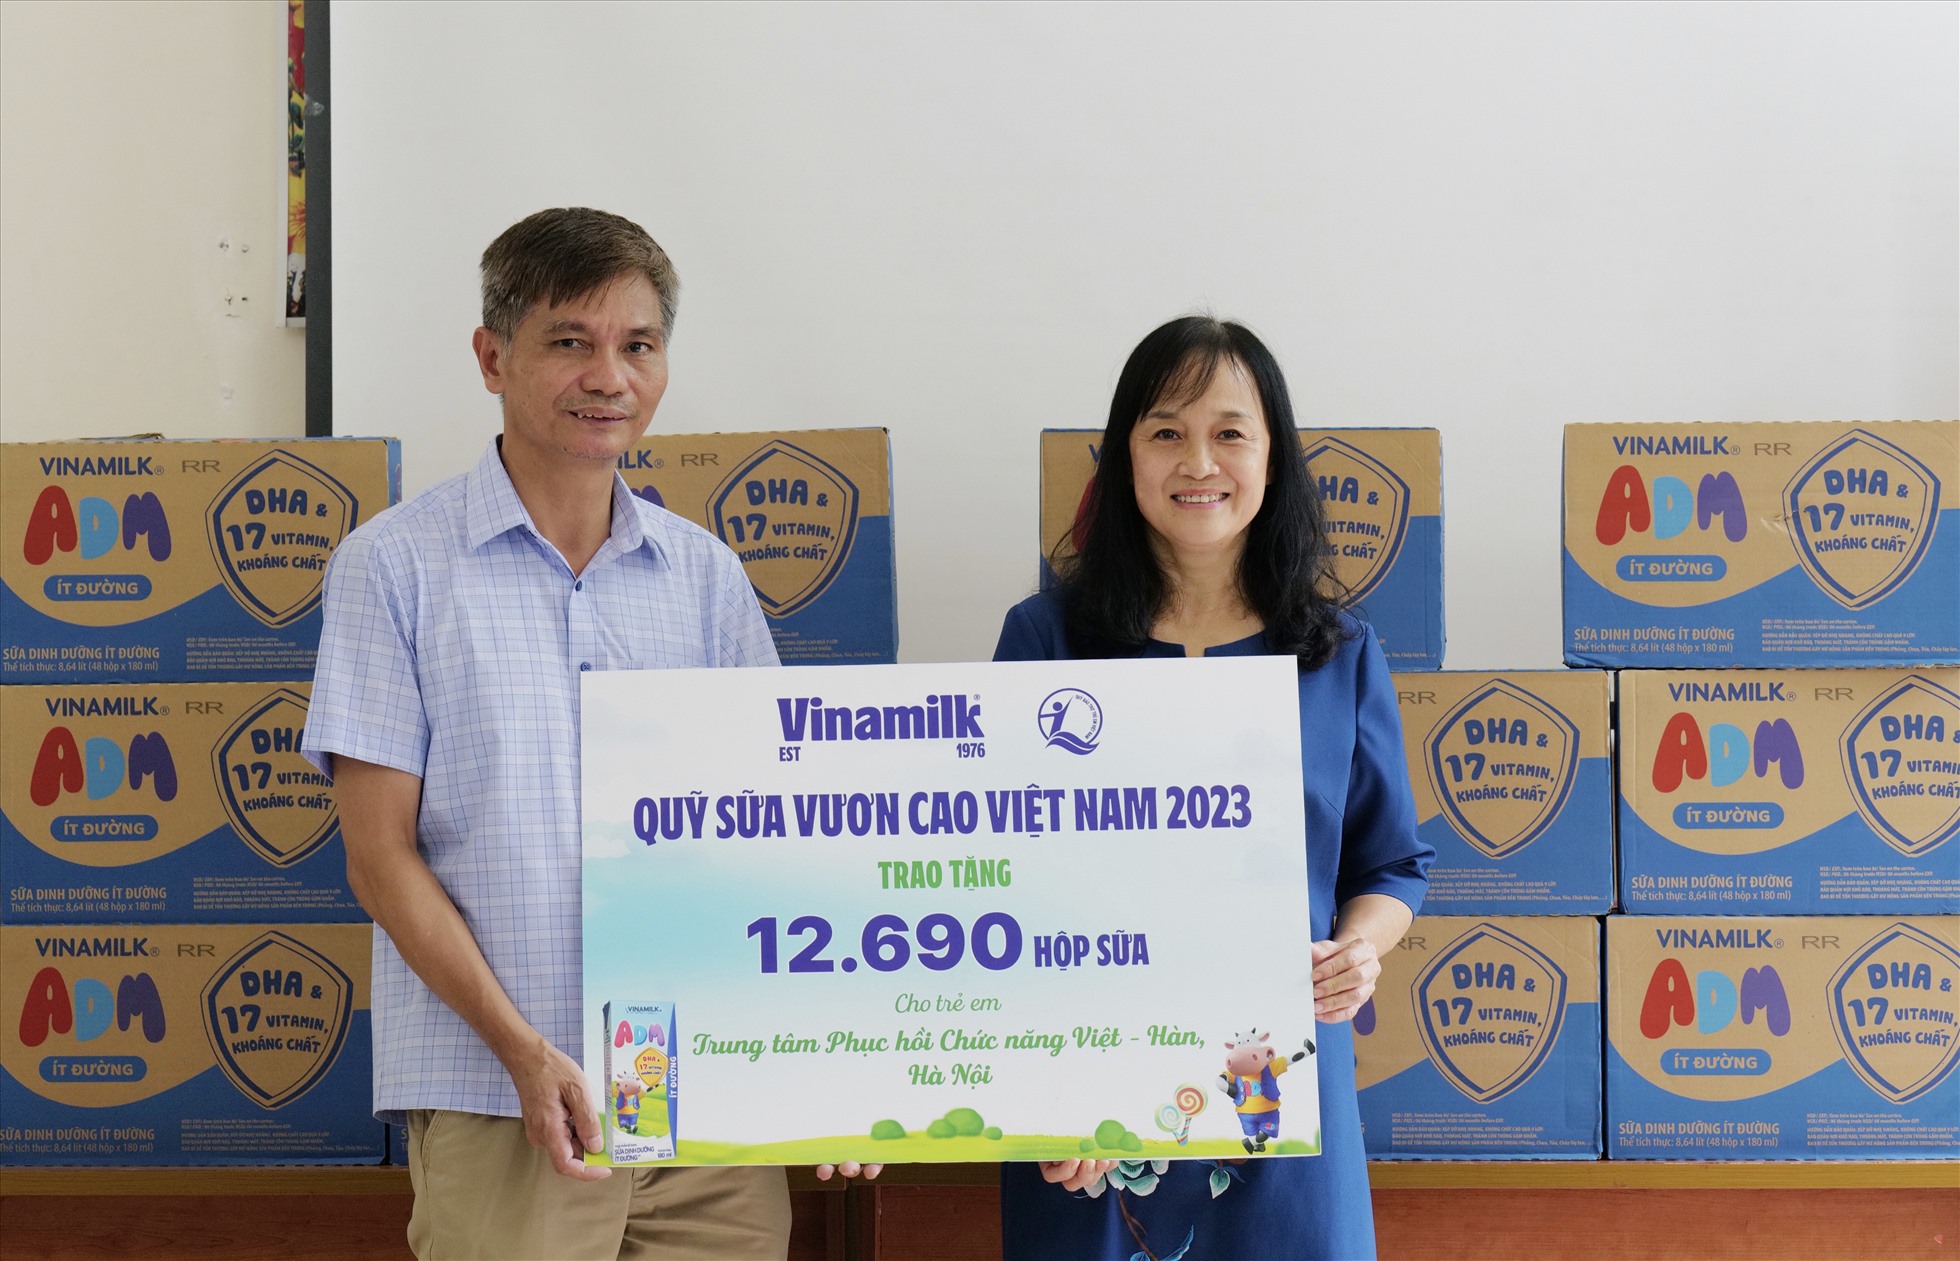 Quỹ Sữa Vươn Cao Việt Nam đến với Trung Tâm Phục hồi Chức Năng Việt - Hàn. Ảnh: Vinamilk